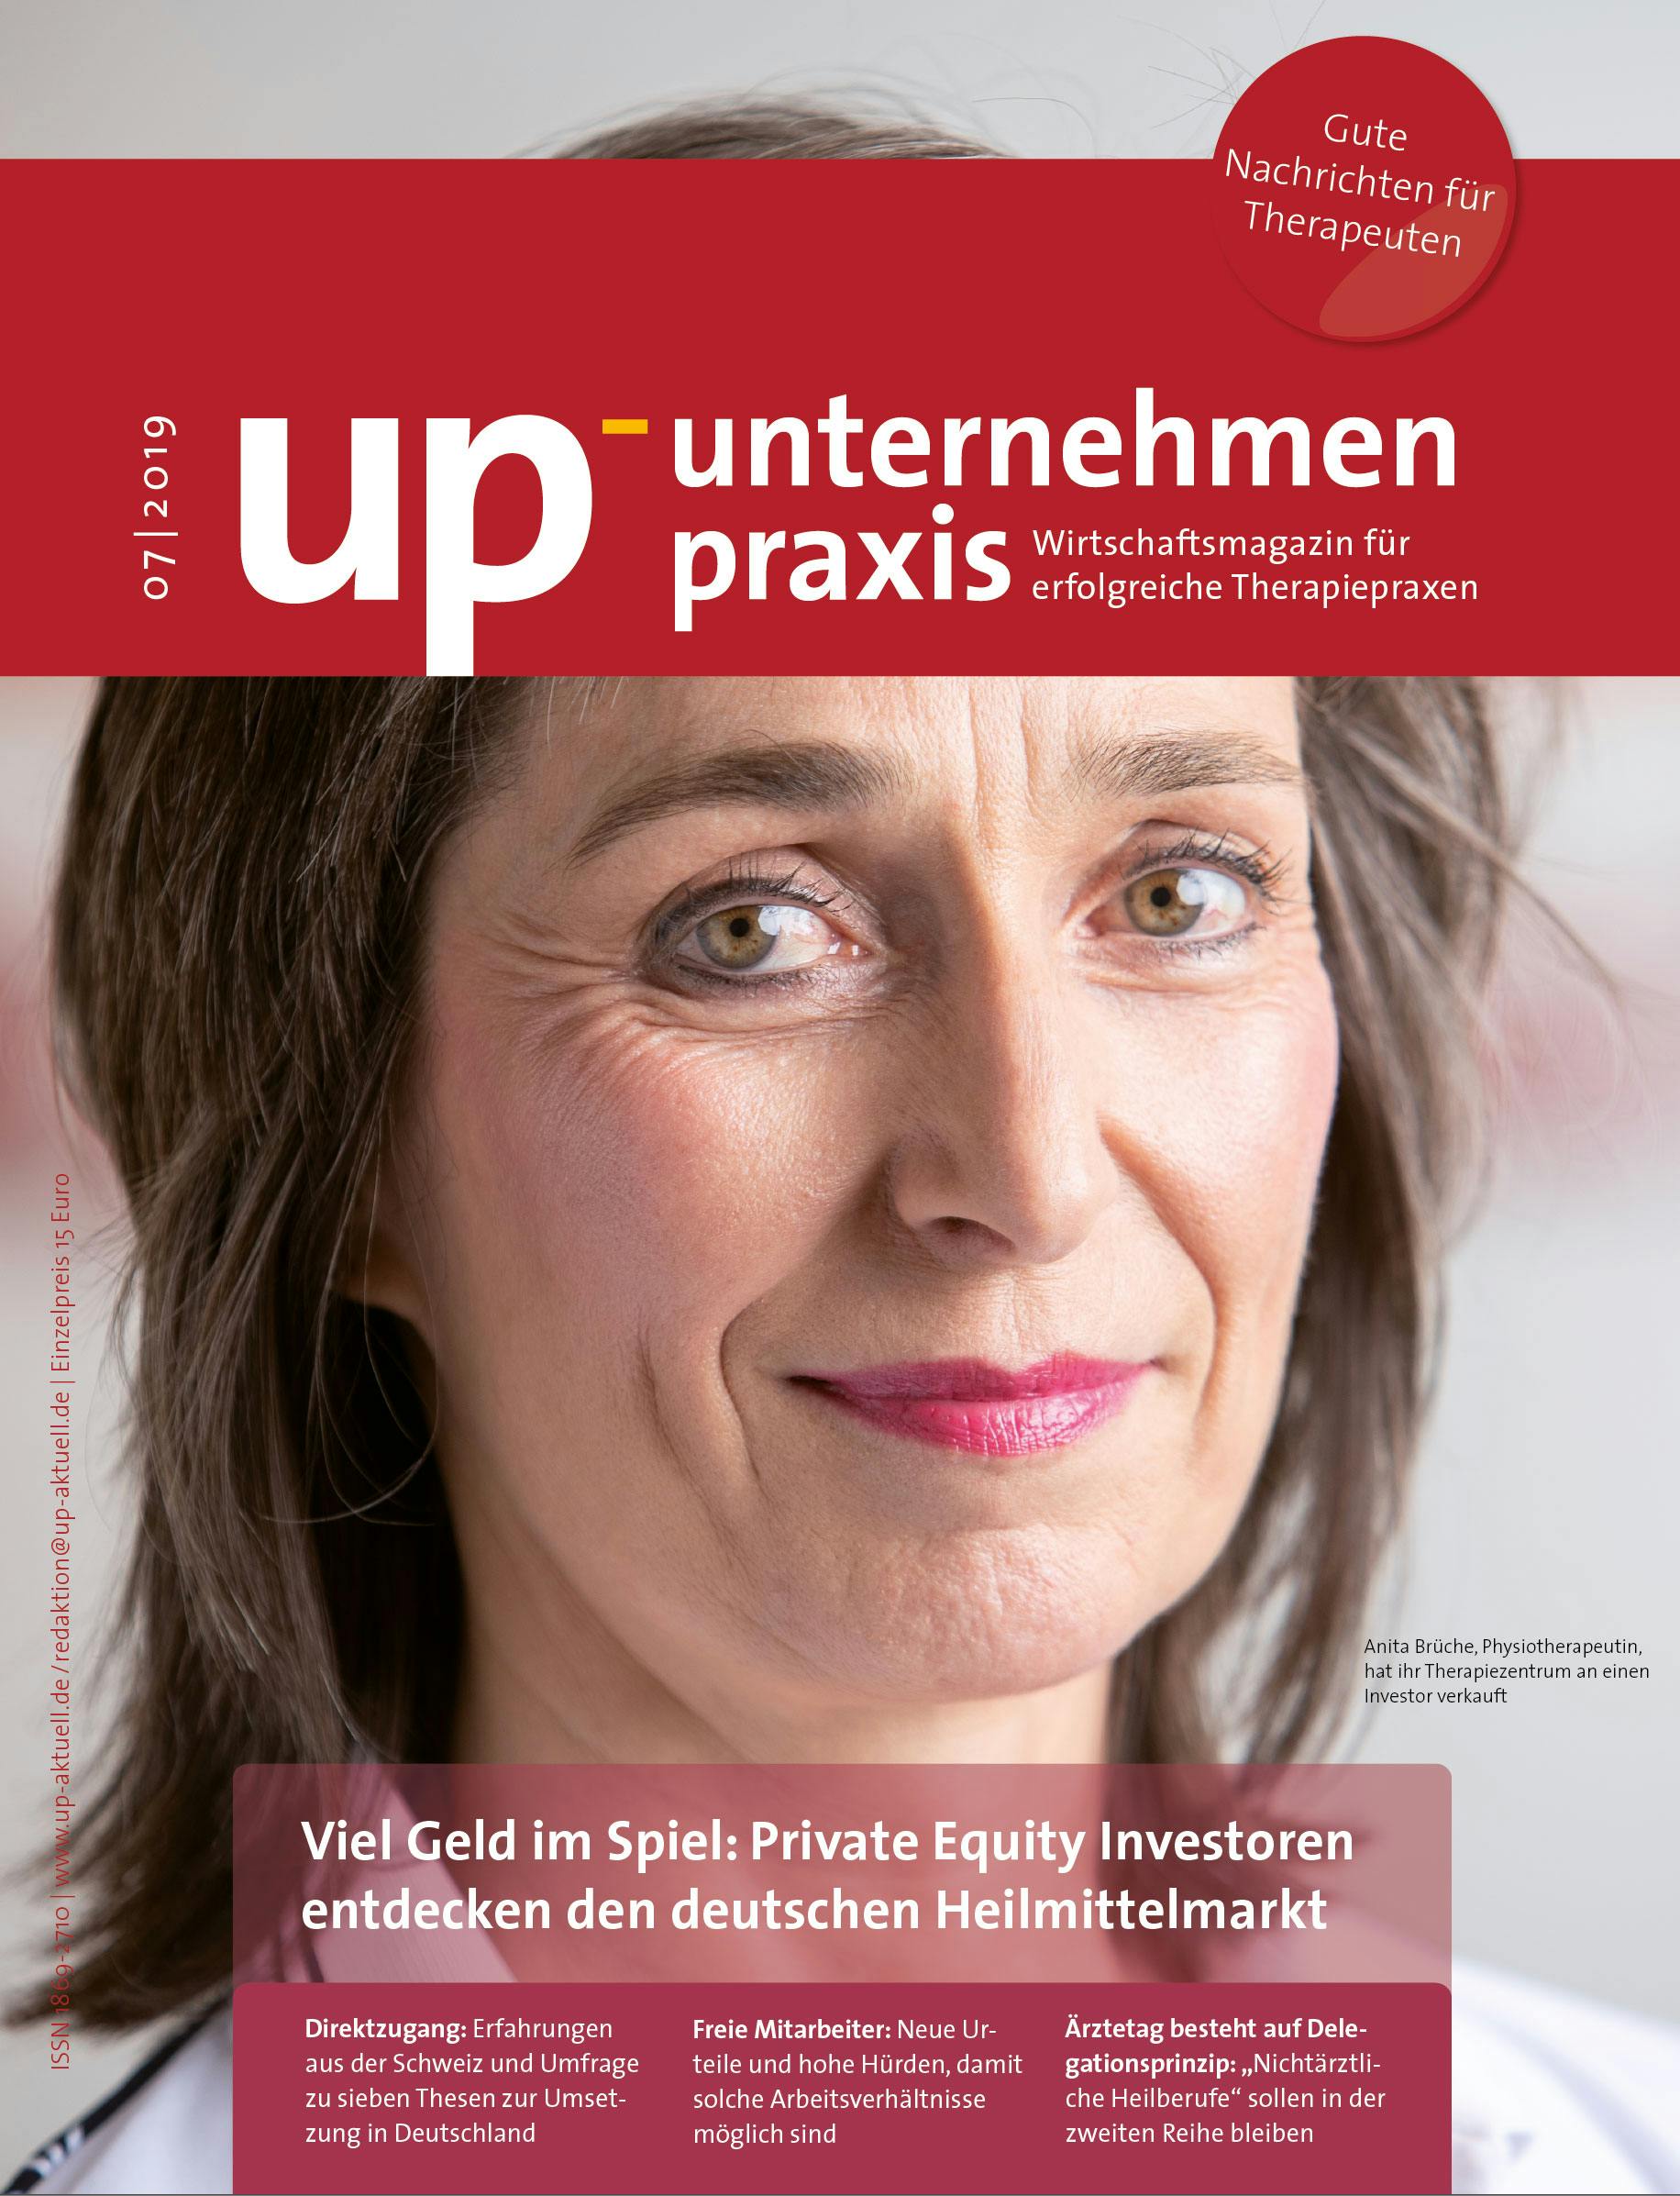 Ausgabe 7/2019 Viel Geld im Spiel: Investoren entdecken den deutschen Heilmittelmarkt